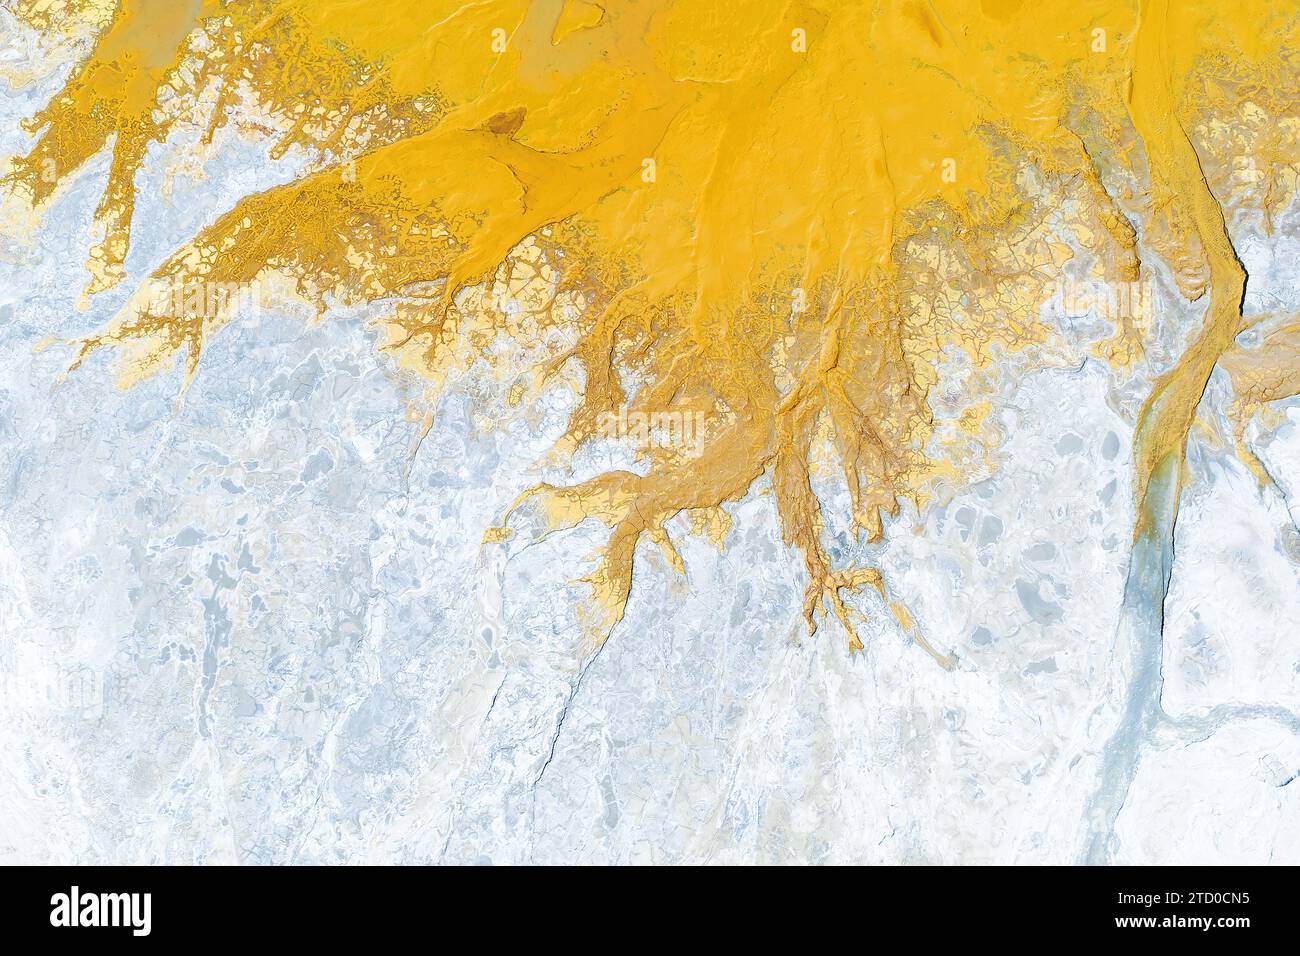 La prise de vue aérienne abstraite capture les teintes jaunes et blanches éclatantes des eaux minérales de Rio Tinto à Huelva, en Espagne. Banque D'Images